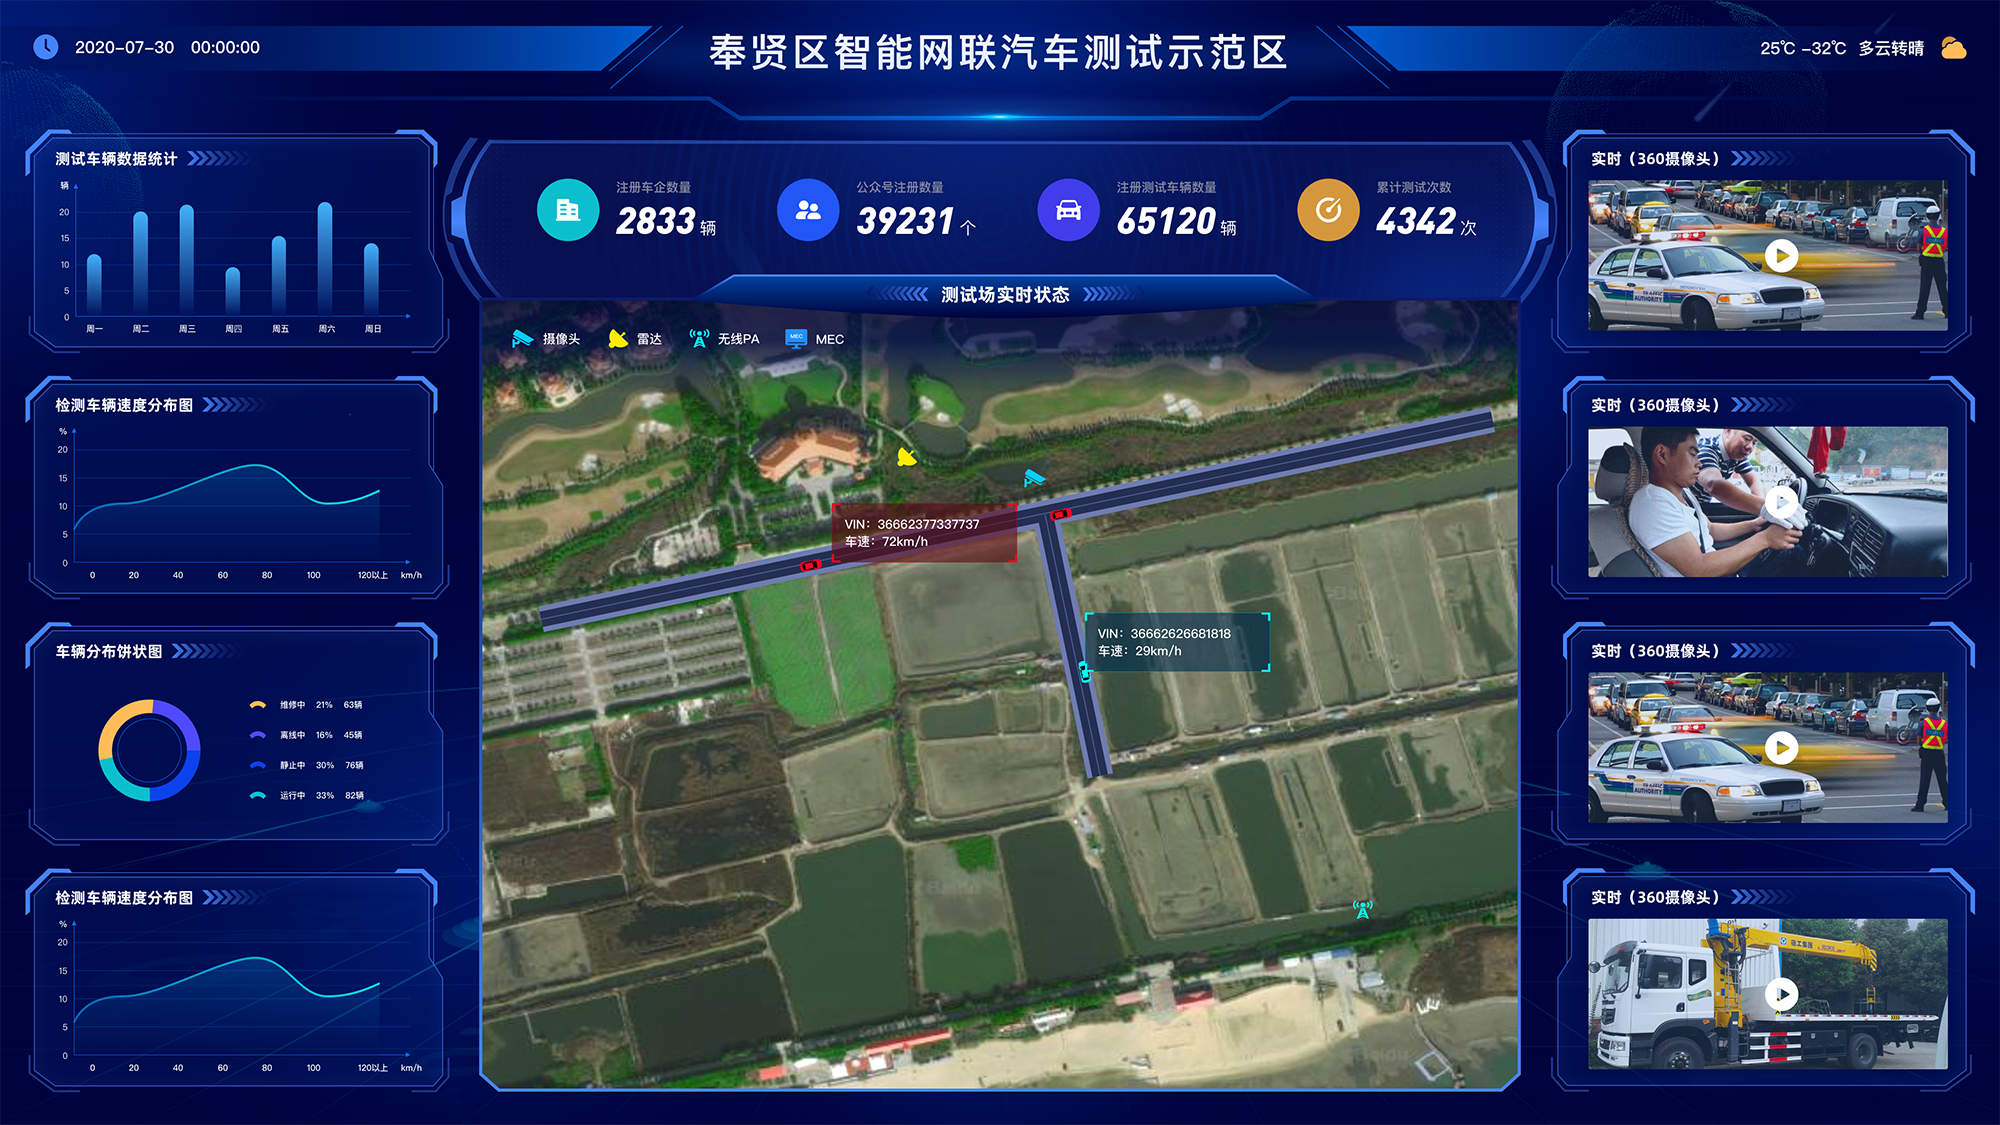 上海奉贤区智能网联汽车测试示范区平台